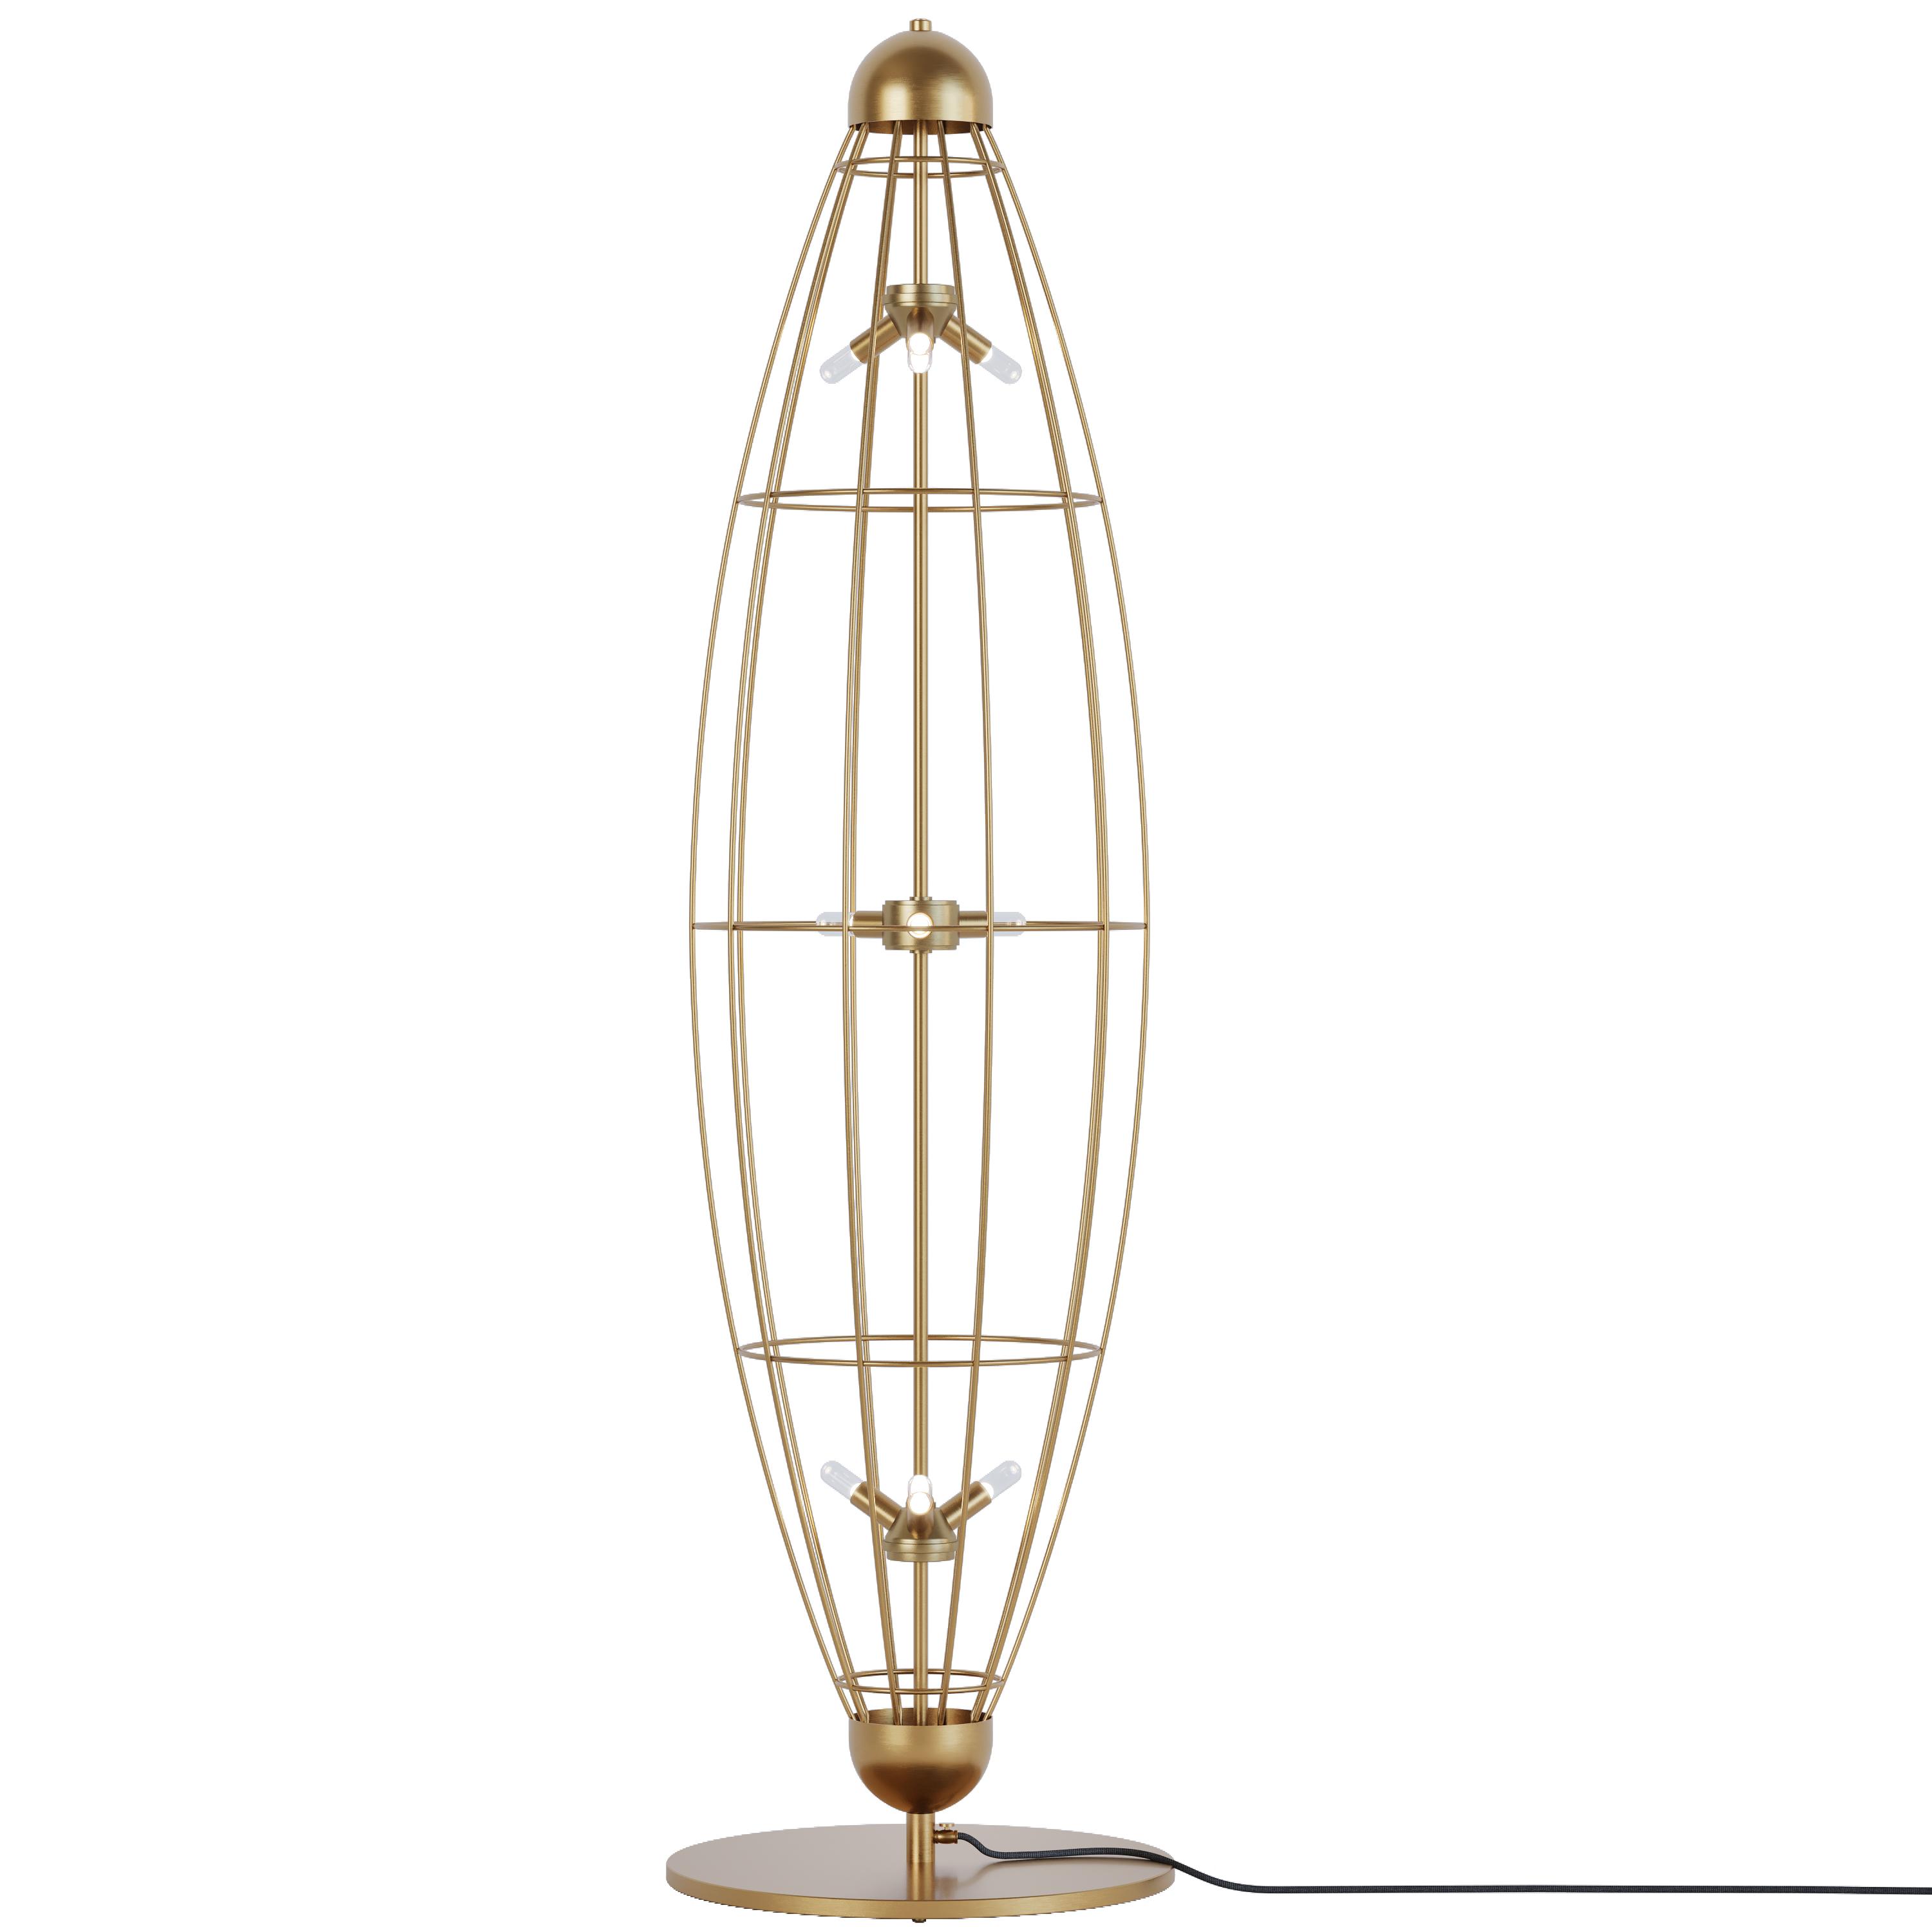 Chrystalis floor lamp, SKU. 28462 by Pikartlights 3d model